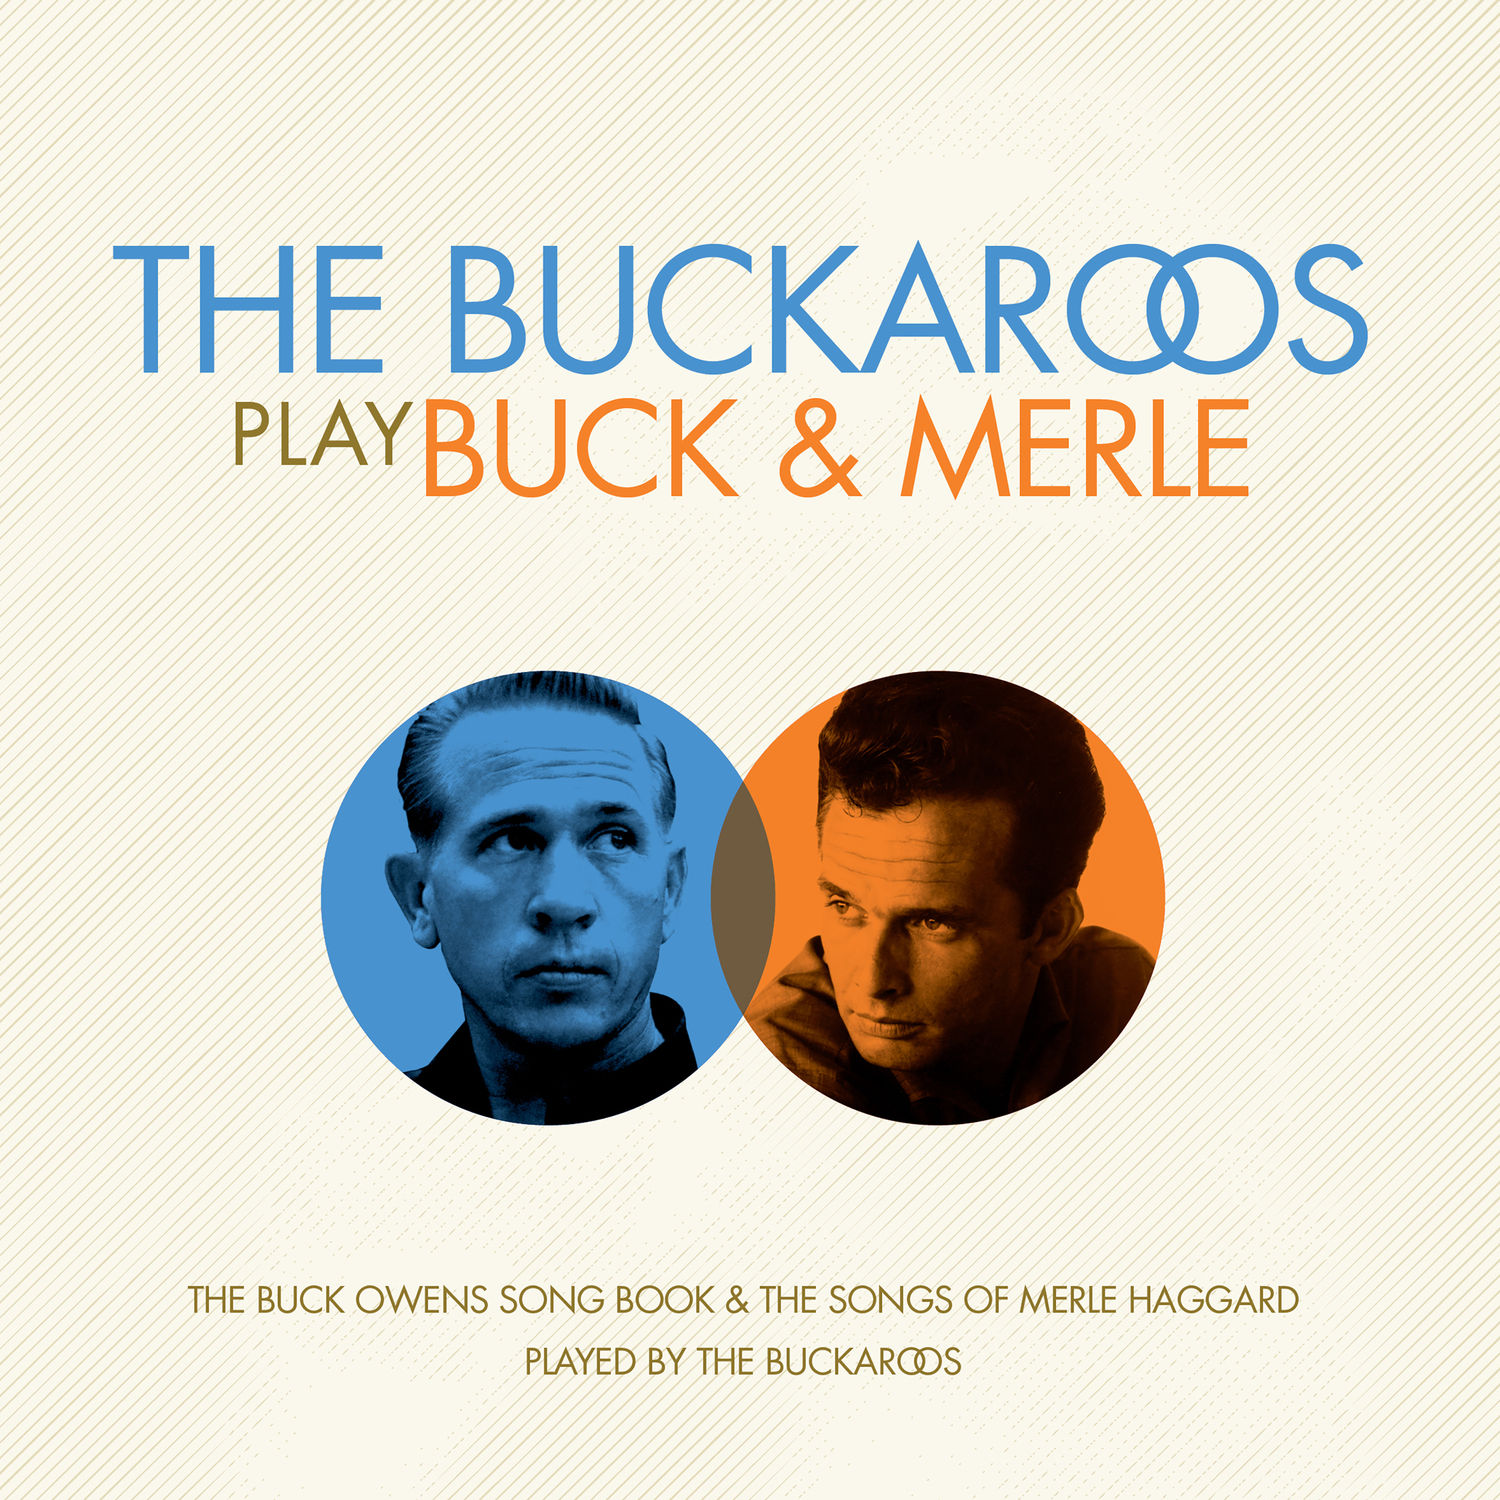 The Buckaroos – The Buckaroos Play Buck & Merle (2013/2020) [FLAC 24bit/44,1kHz]